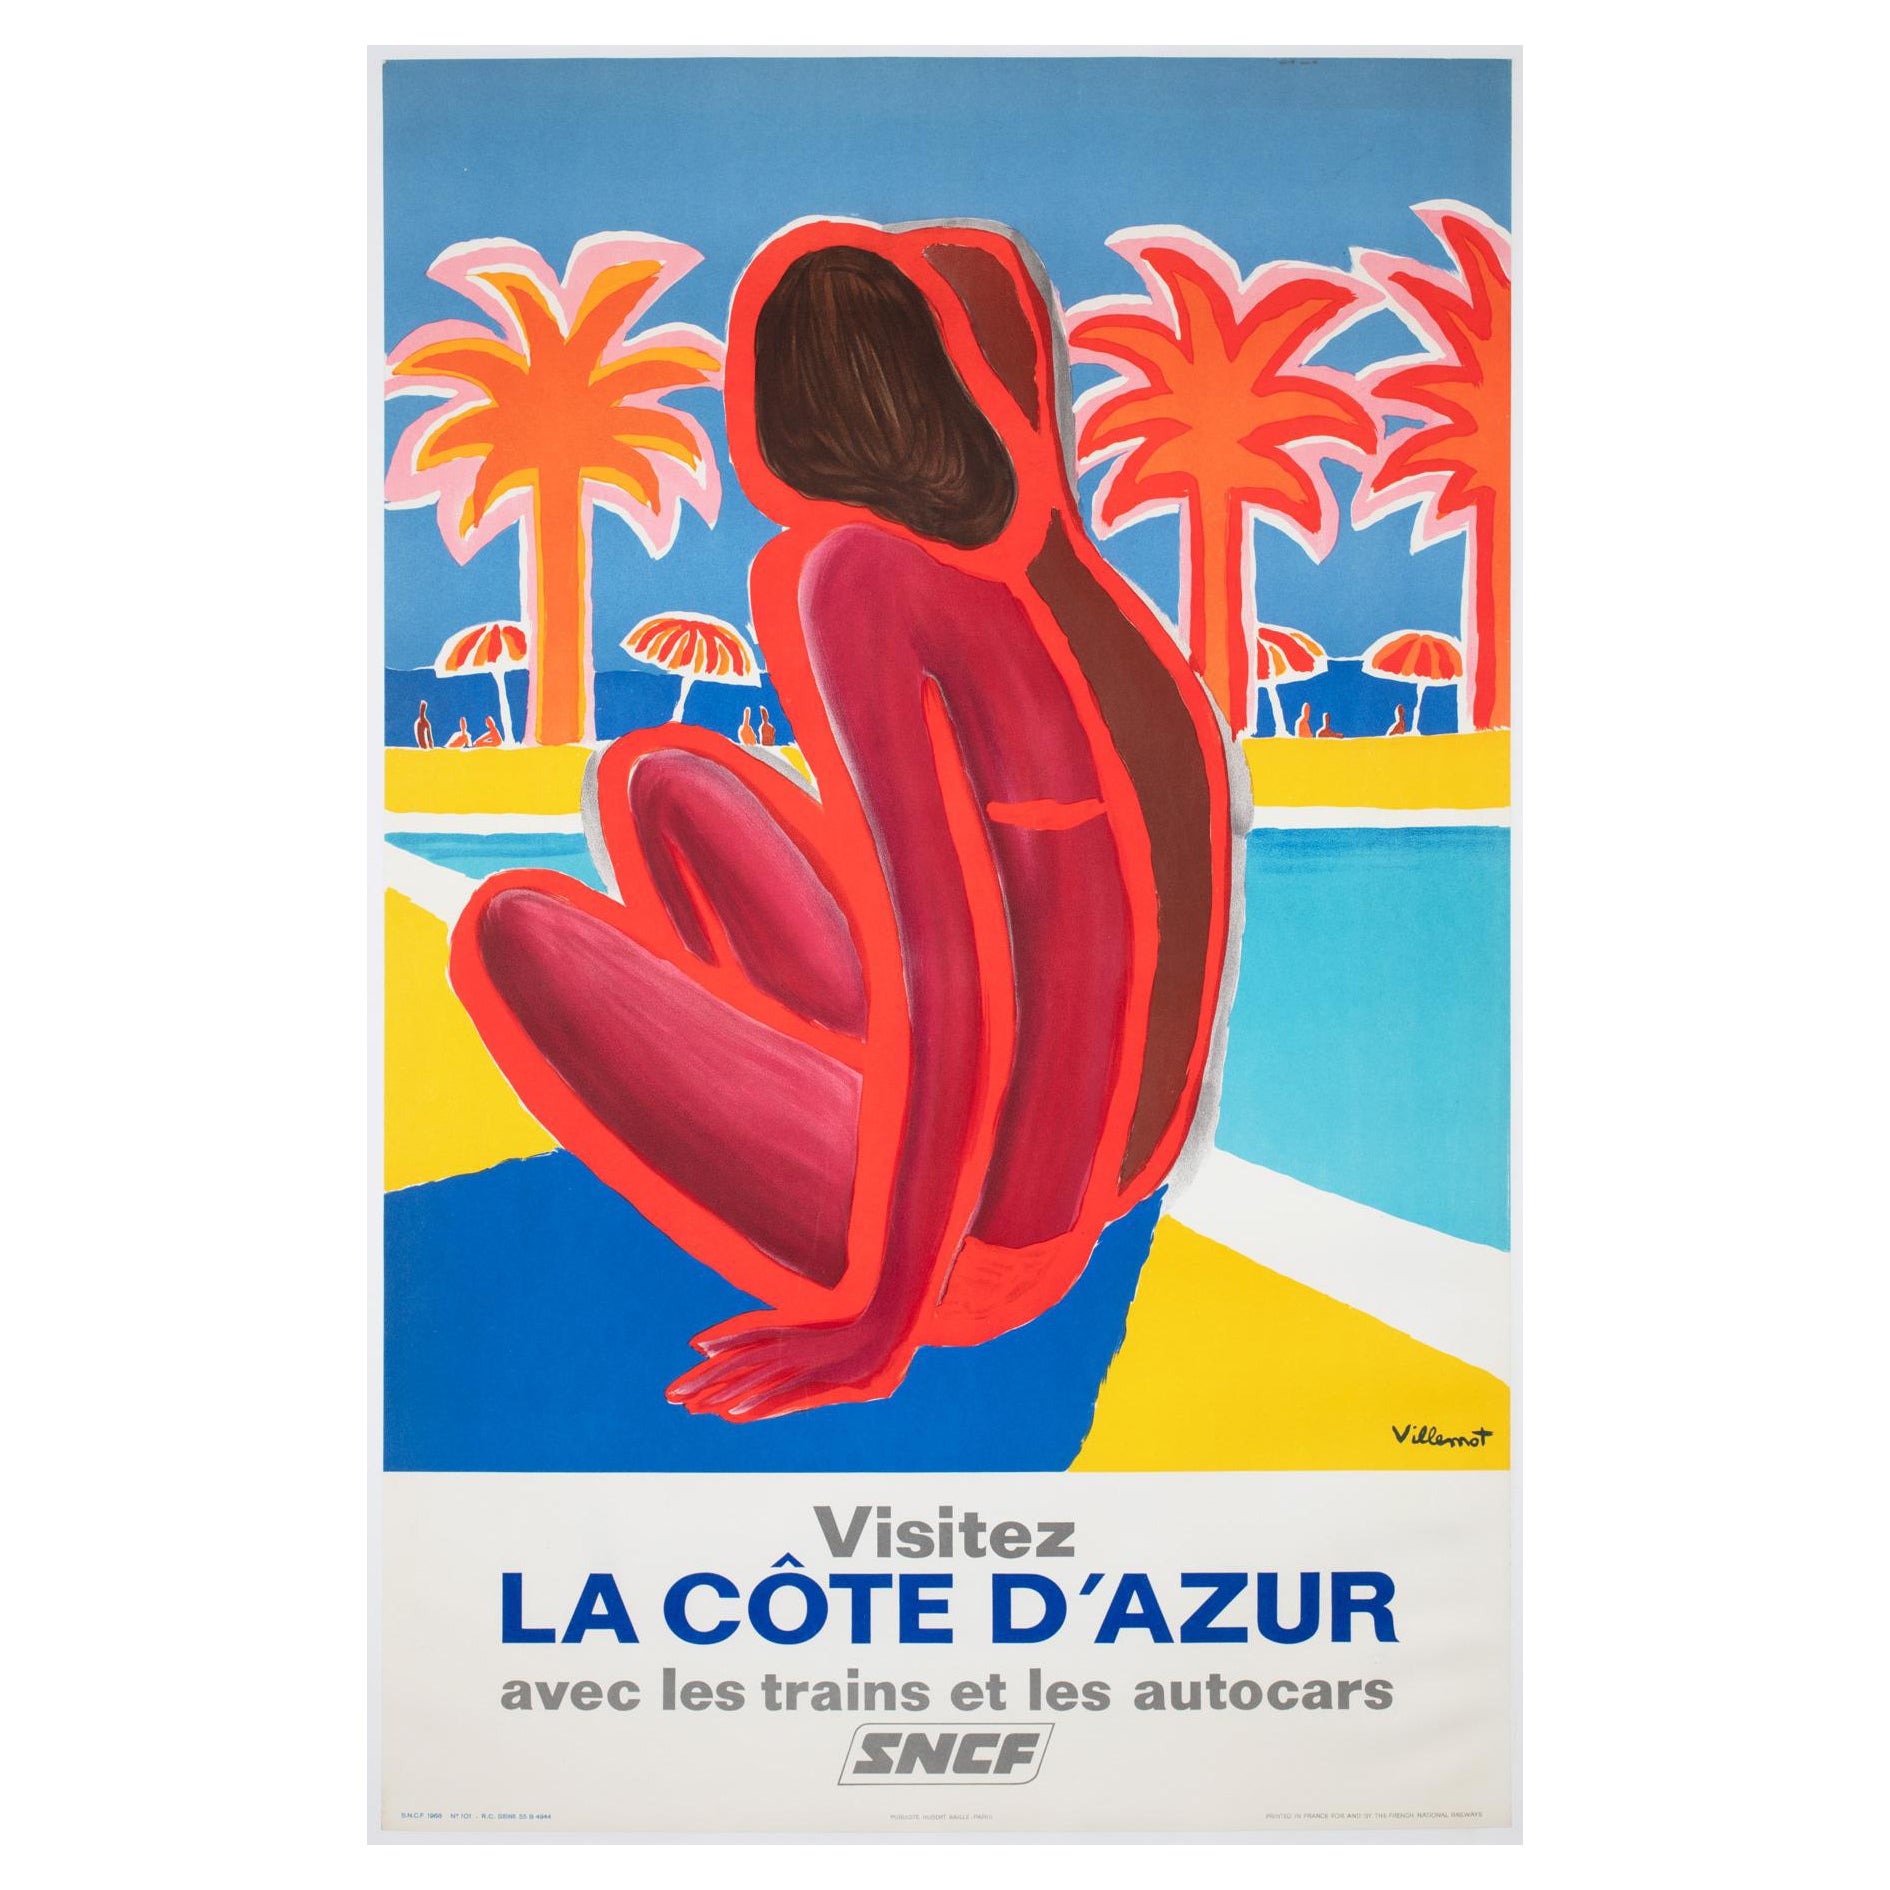 Cote d'Azur SNCF 1968 Travel Advertising Poster, Bernard Villemot For Sale